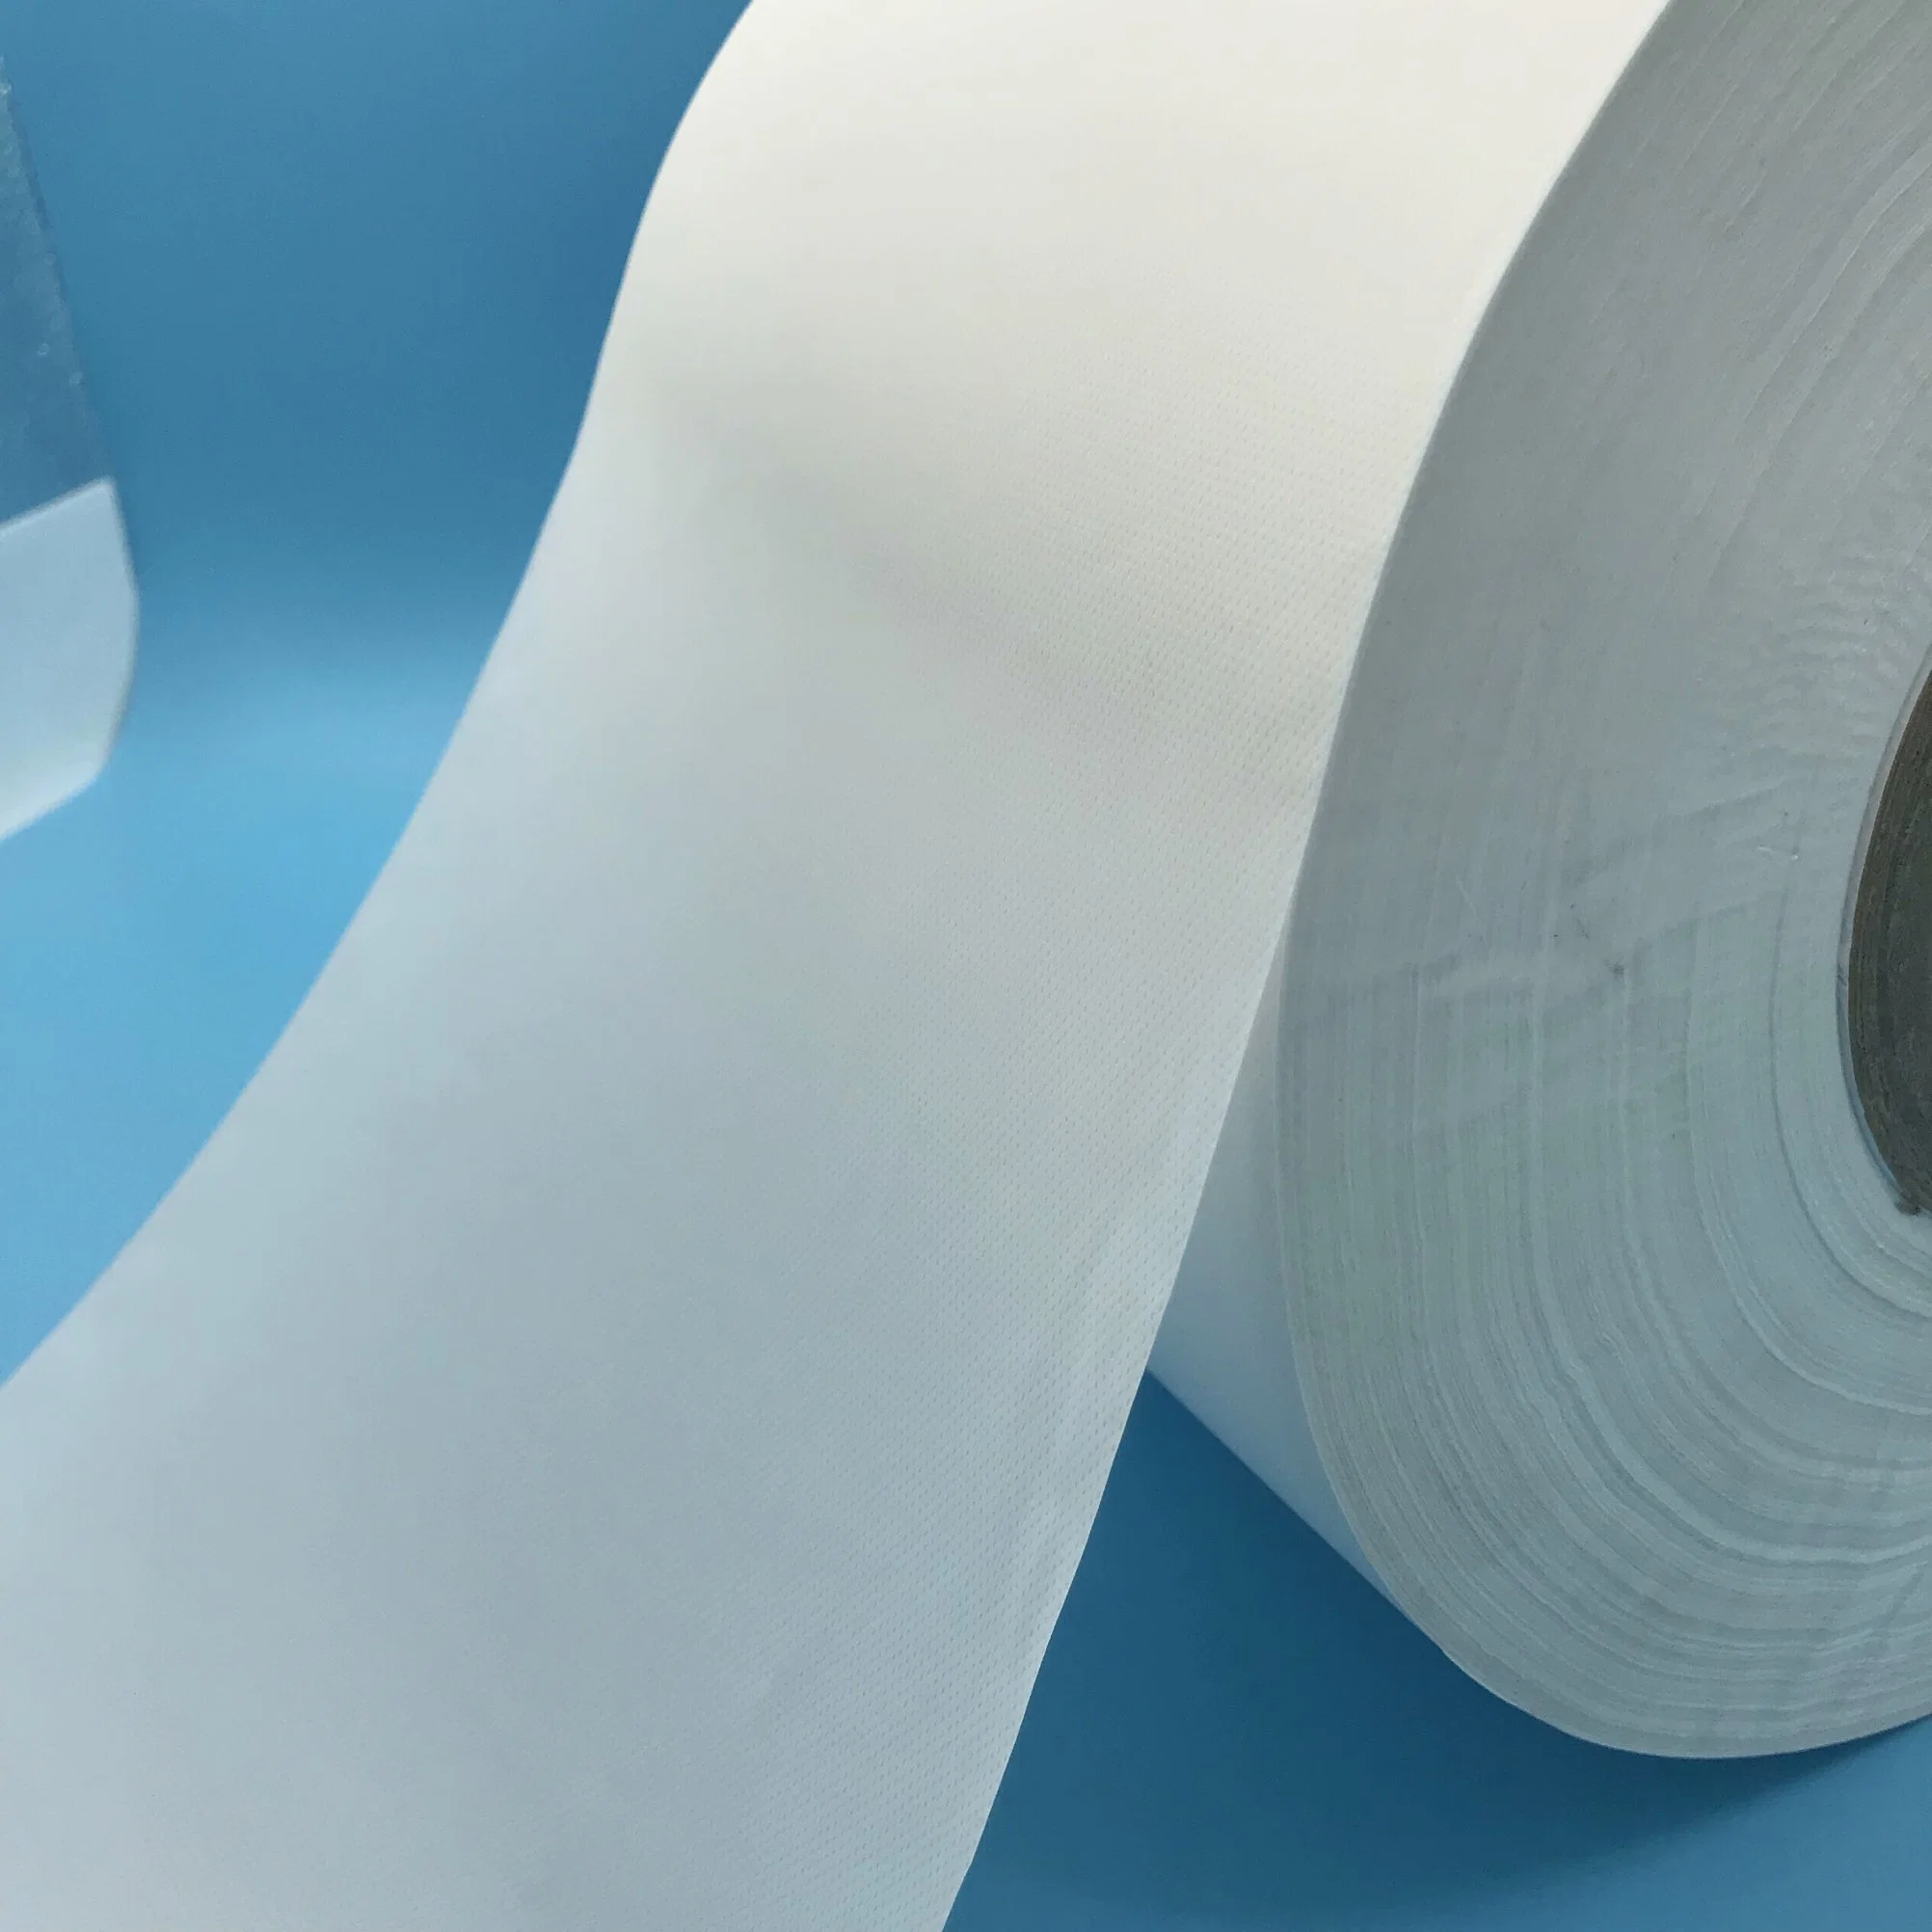 Juhuachuang Disposable Elastic Non Woven Fabric 3ply Nonwoven Fabric Suppliers Non Woven Filter Material